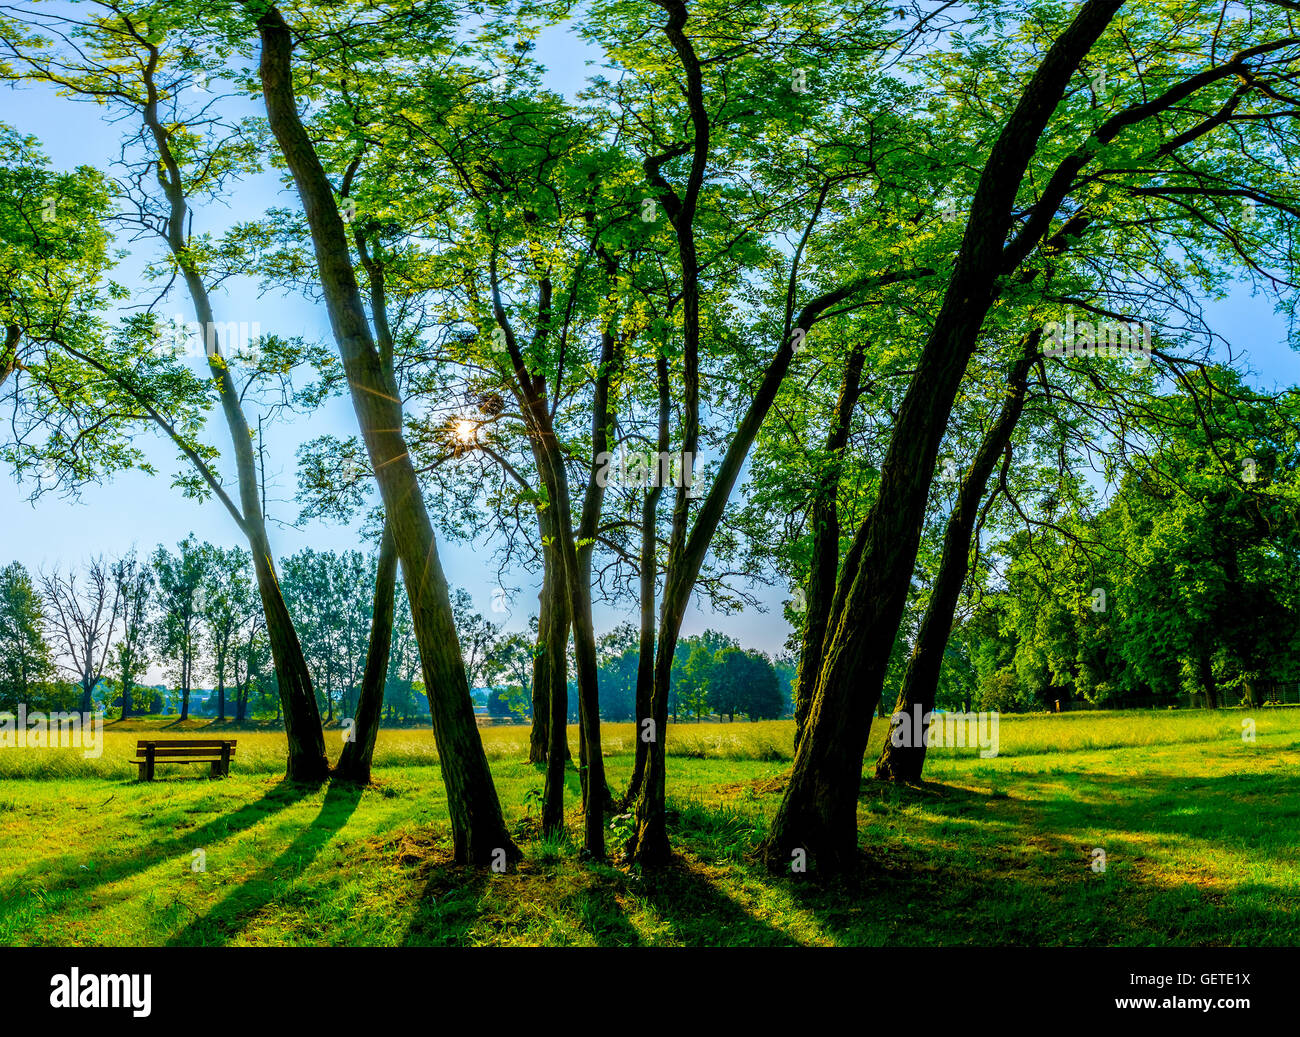 sonnige Sommerpark mit Bäumen und grünen Rasen Stockfoto